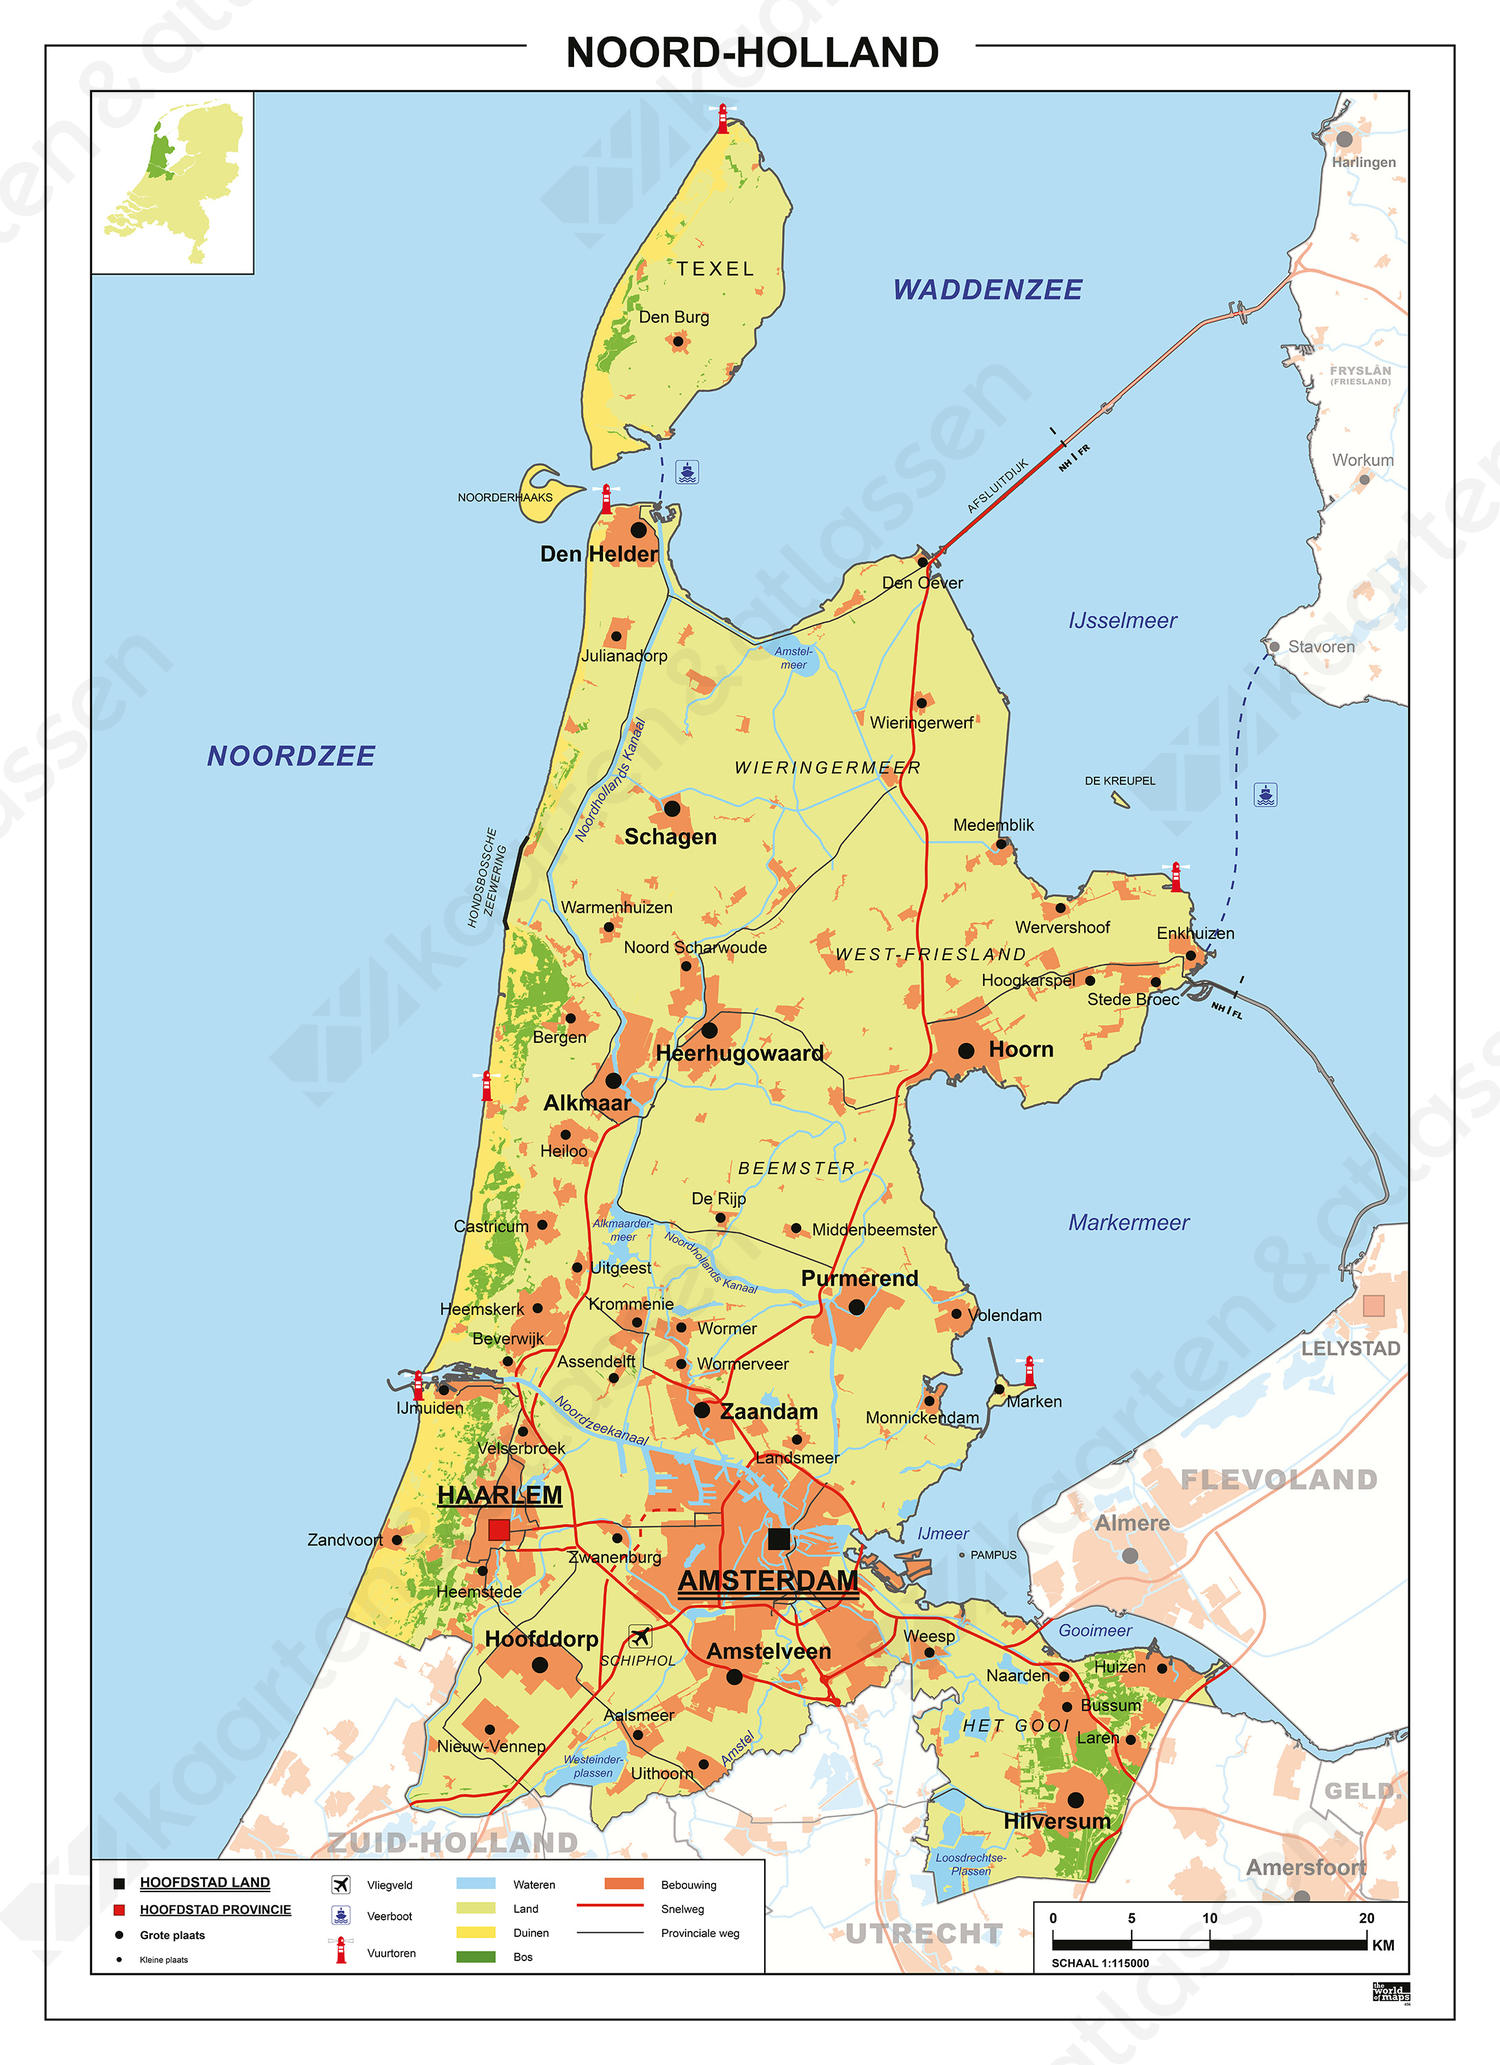 Digitale Kaart Noord-Holland 456